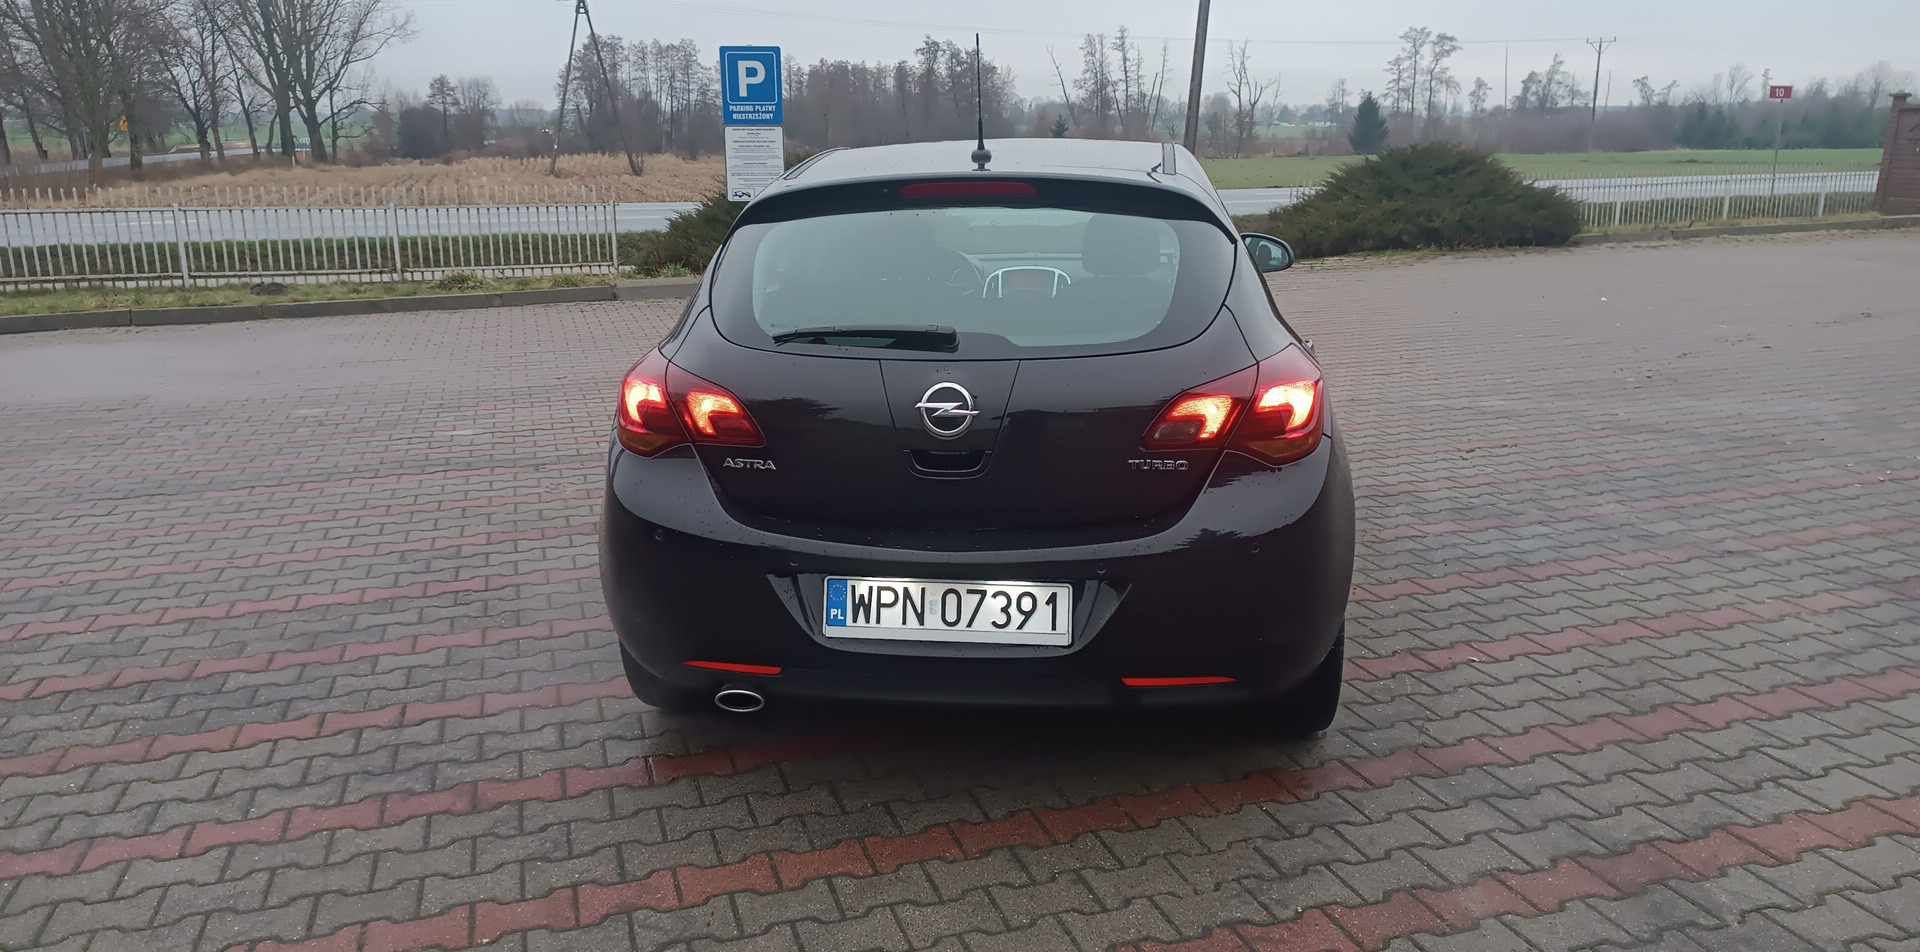 Opel Astra j 1.6 turbo super:)